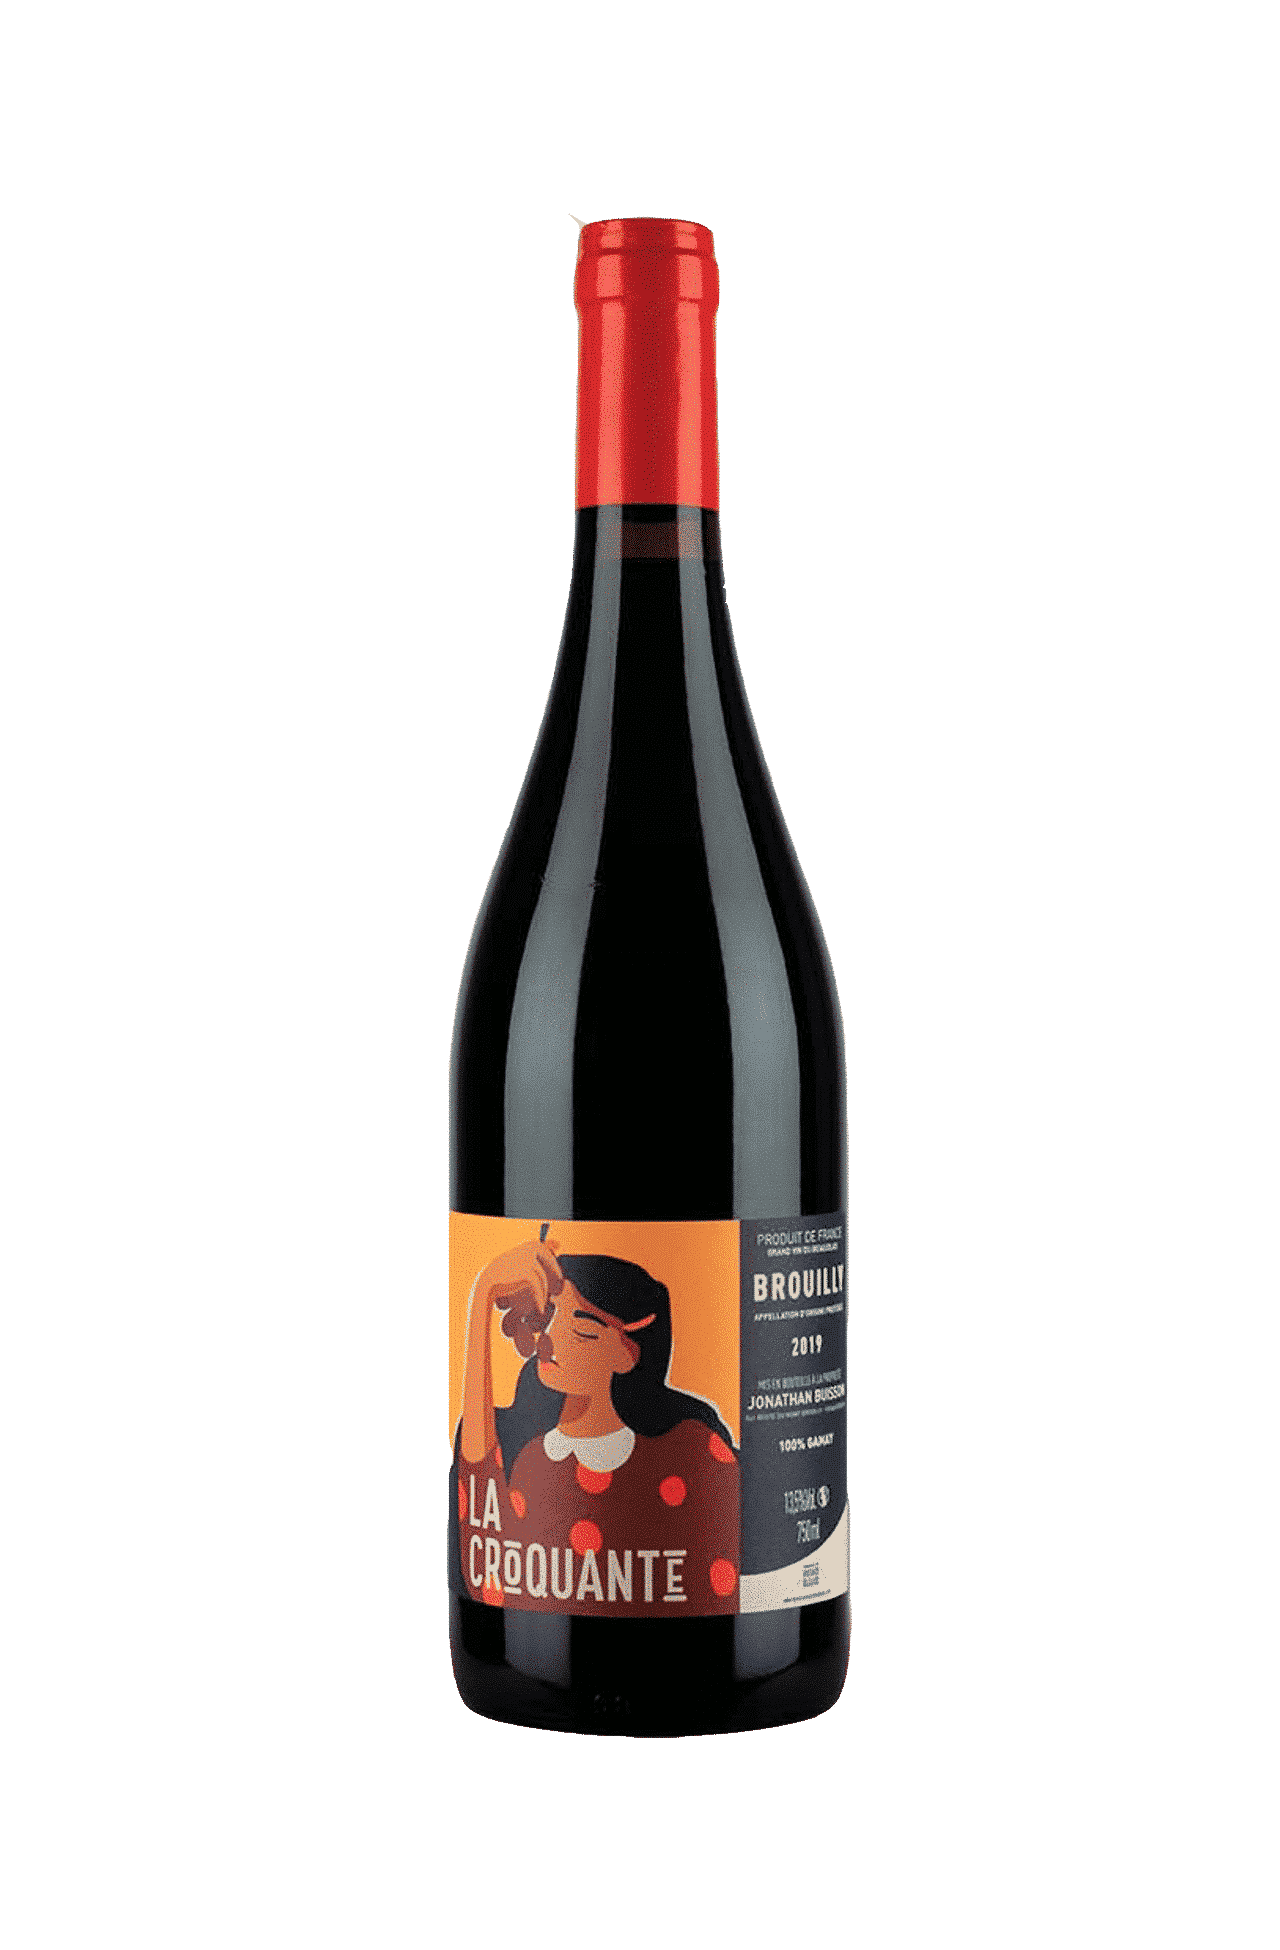 La croquante Brouilly, vin de femme, livraison vin